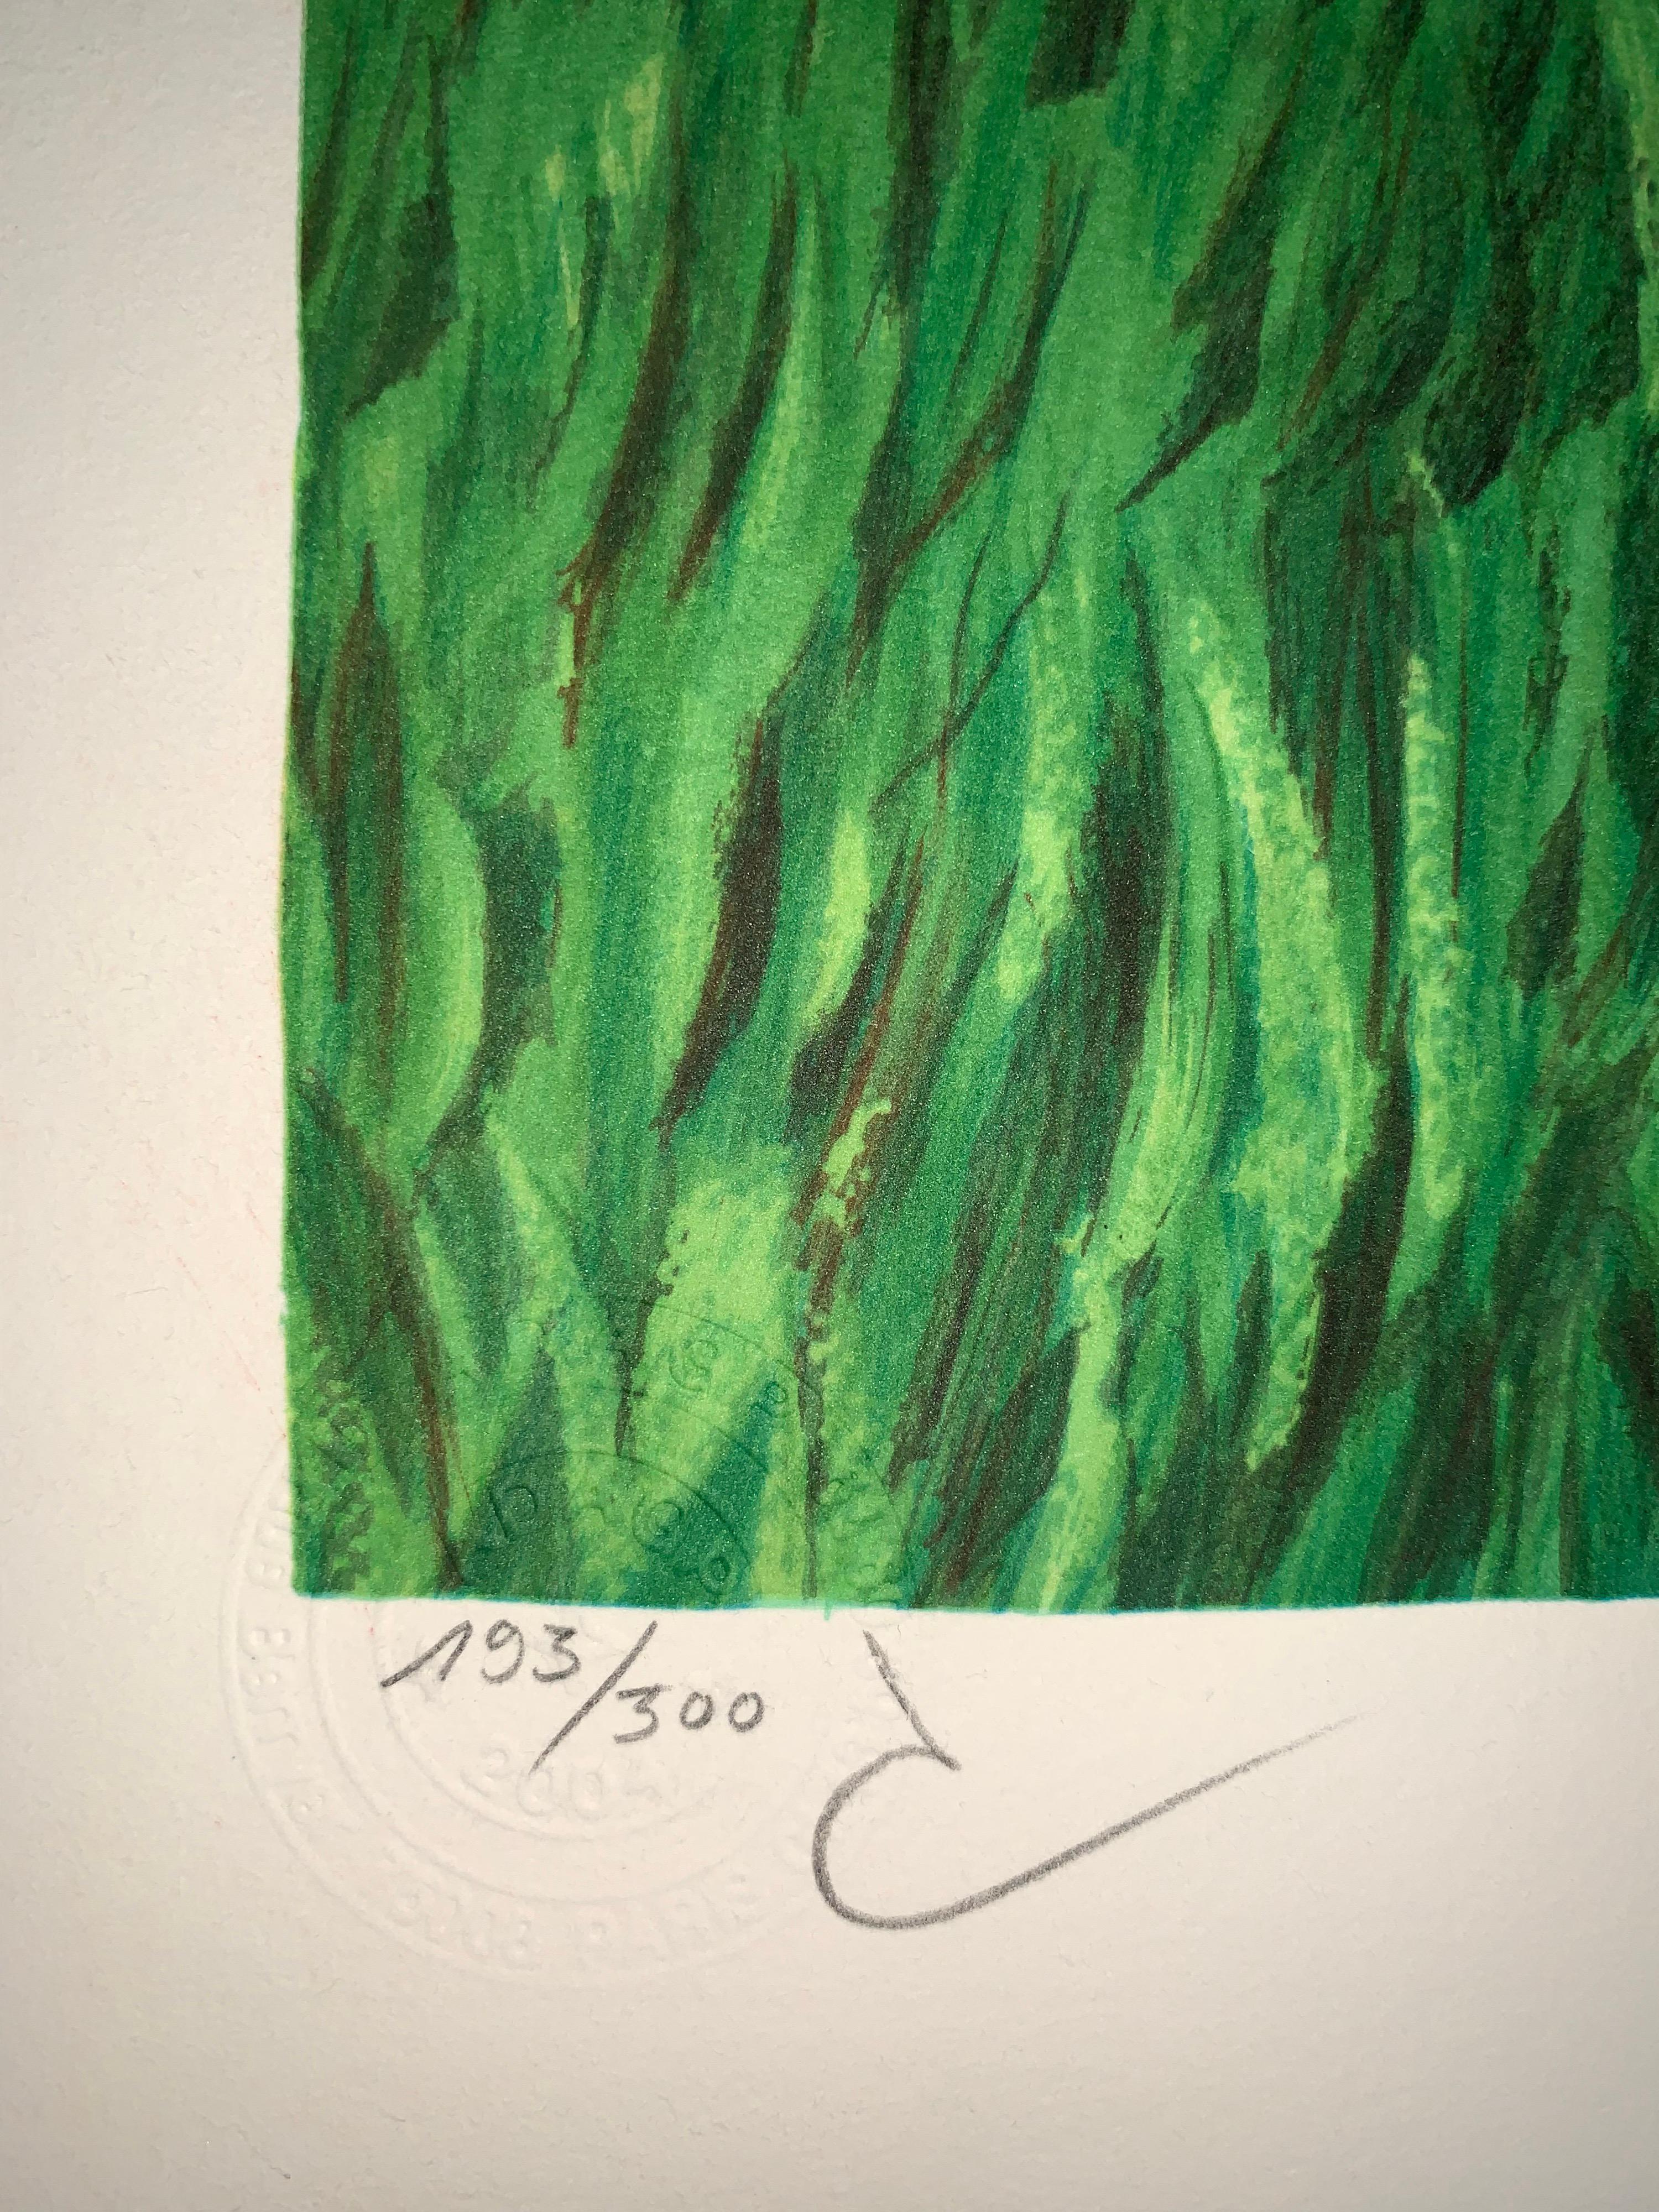 Nummeriert: 193/300
Farblithographie nach dem Öl auf Leinwand von René Magritte aus dem Jahr 1931, signiert von Magritte und nummeriert in einer Auflage von 300 Stück. 
Die Lithographie trägt die Trockenstempel der Magritte-Stiftung und der ADAGP